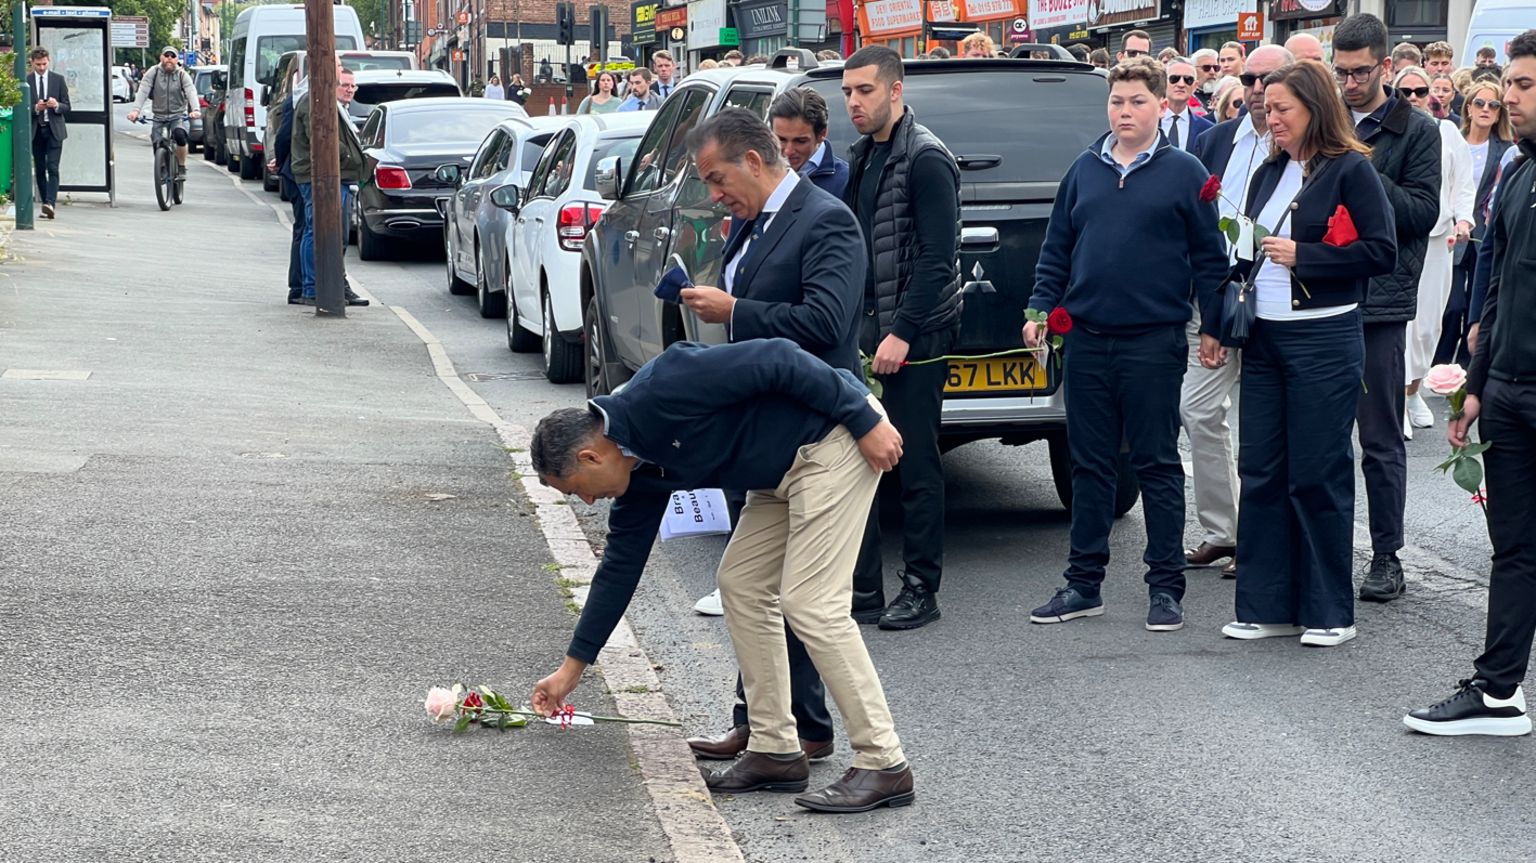 Single rose was laid on Ilkeston Road